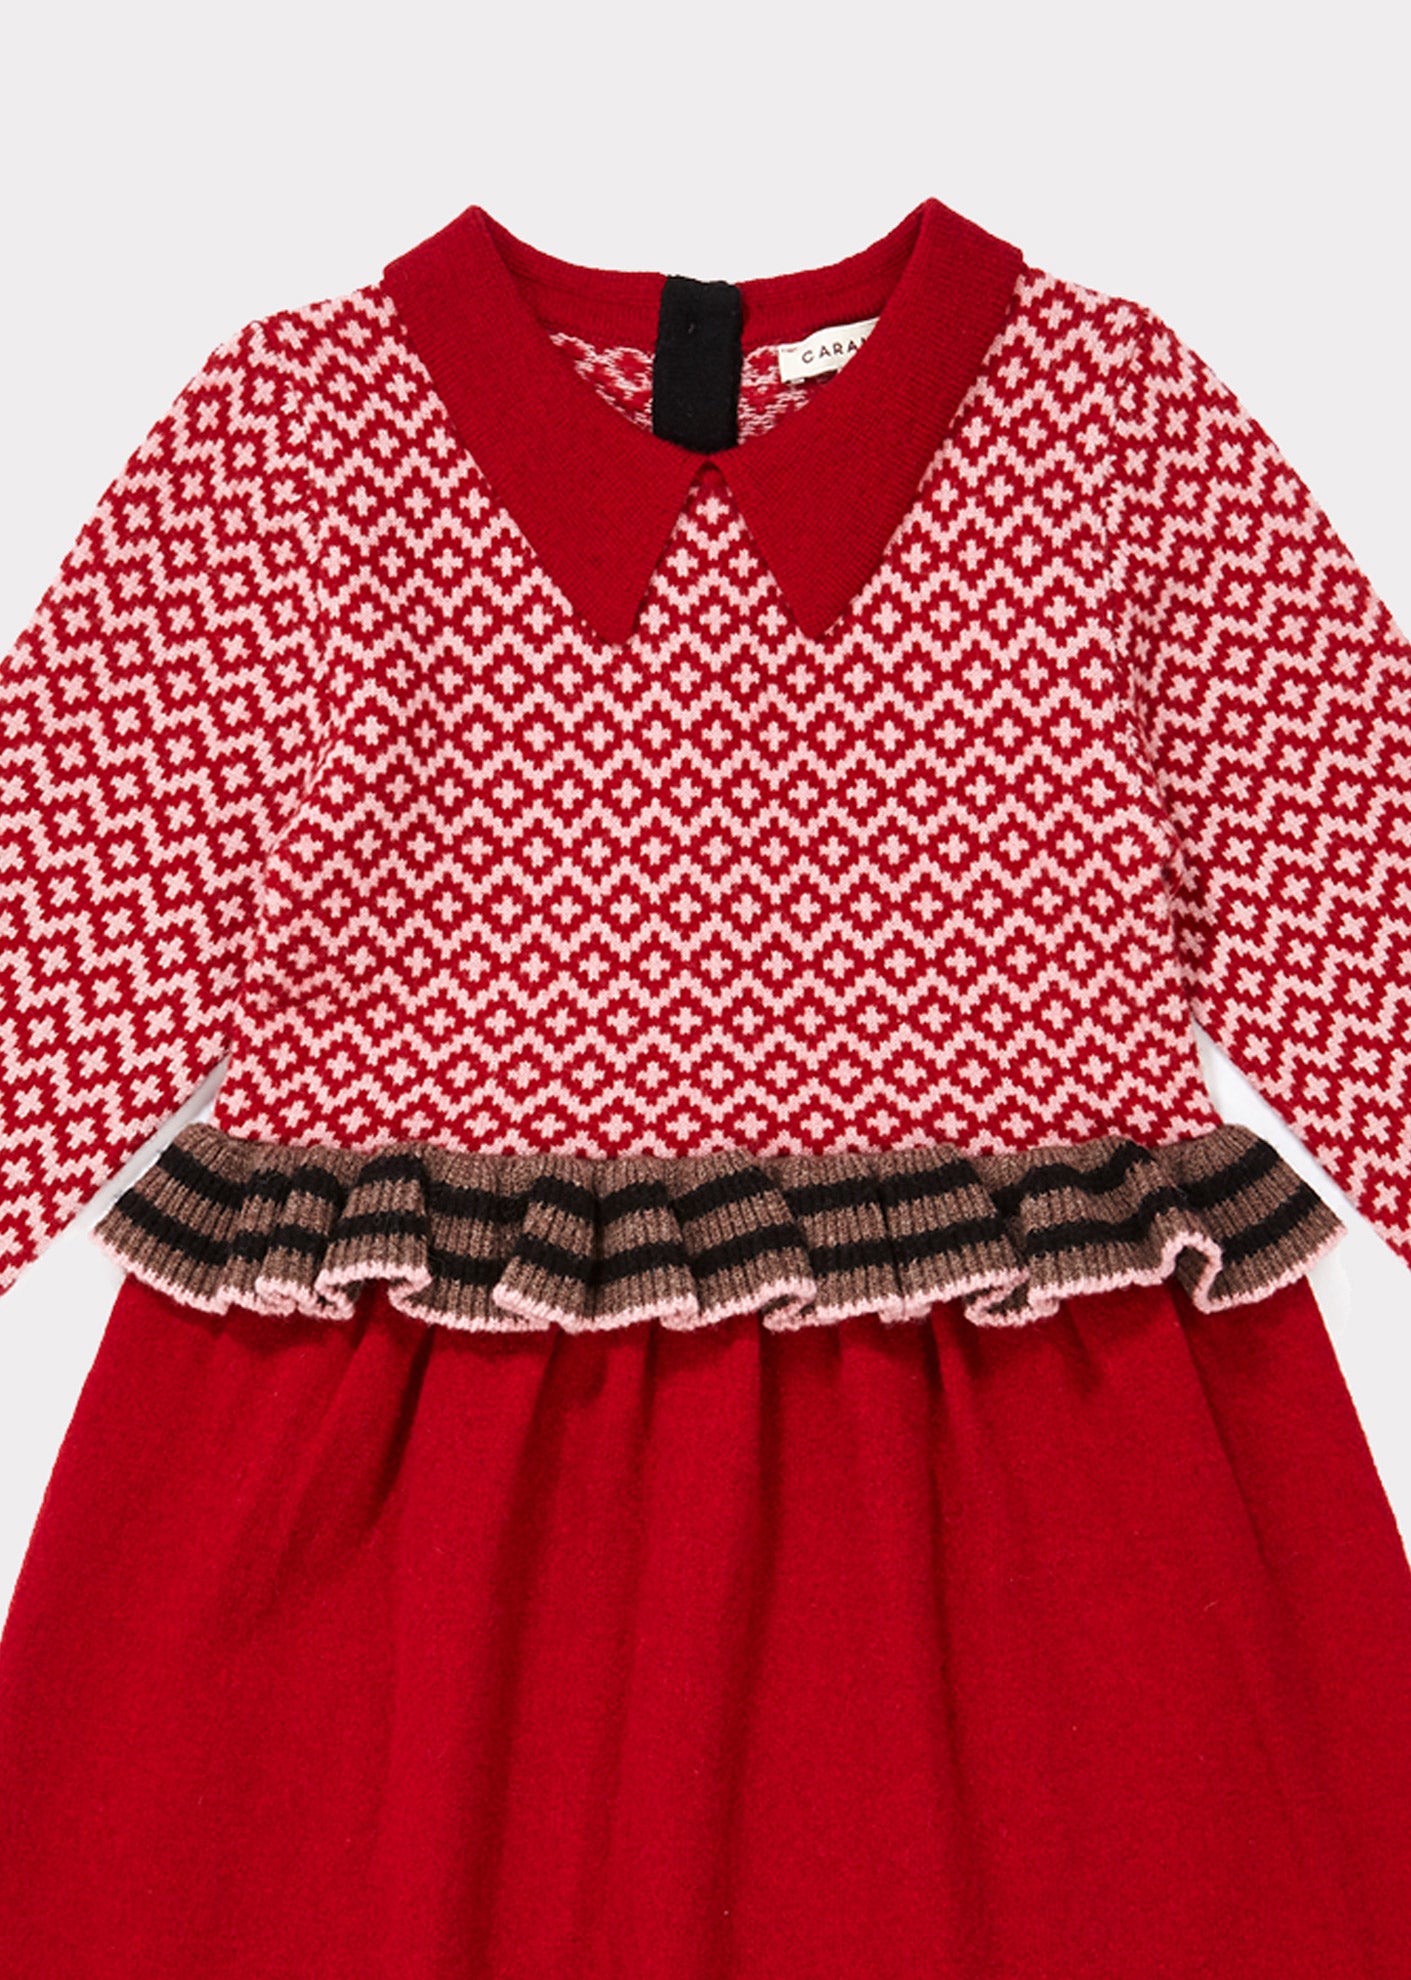 Girls Red Waist Wool Dress